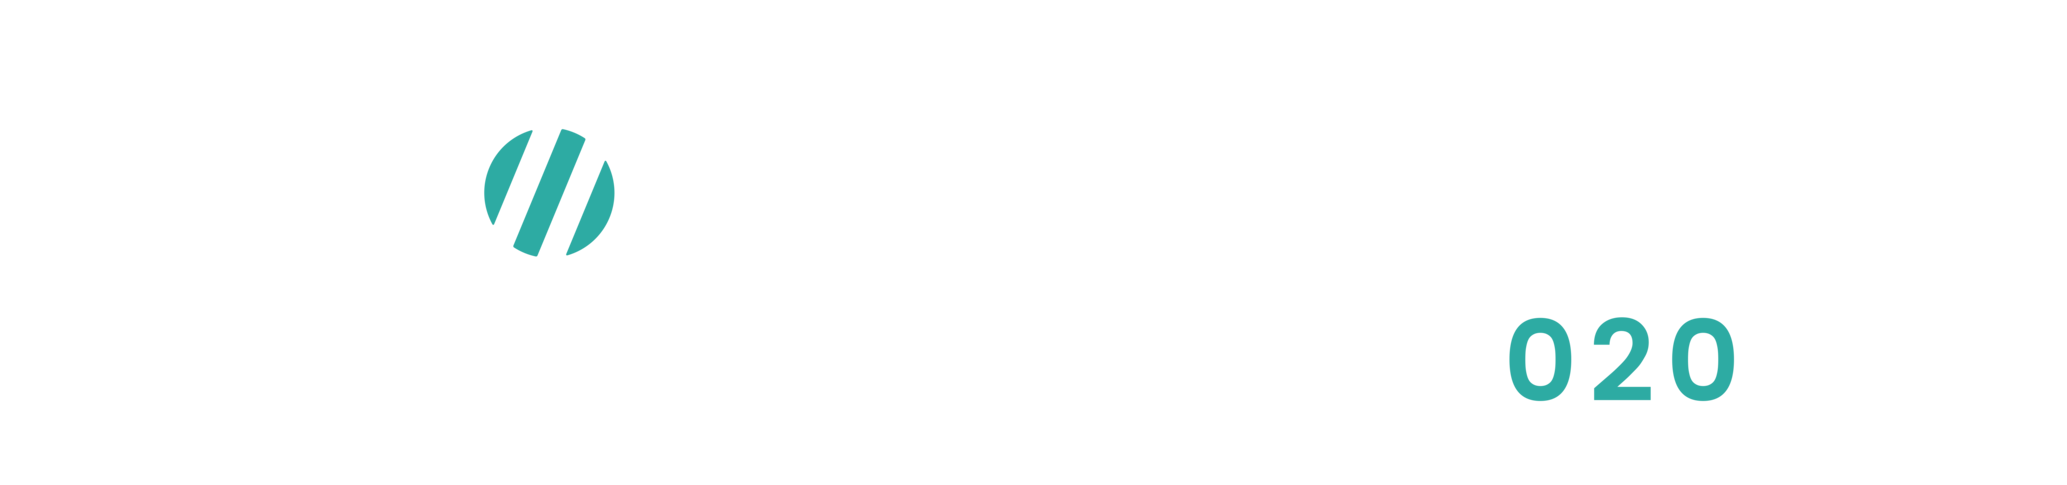 PowerMama BURGUM - Logo compleet - Naam midden - Wit